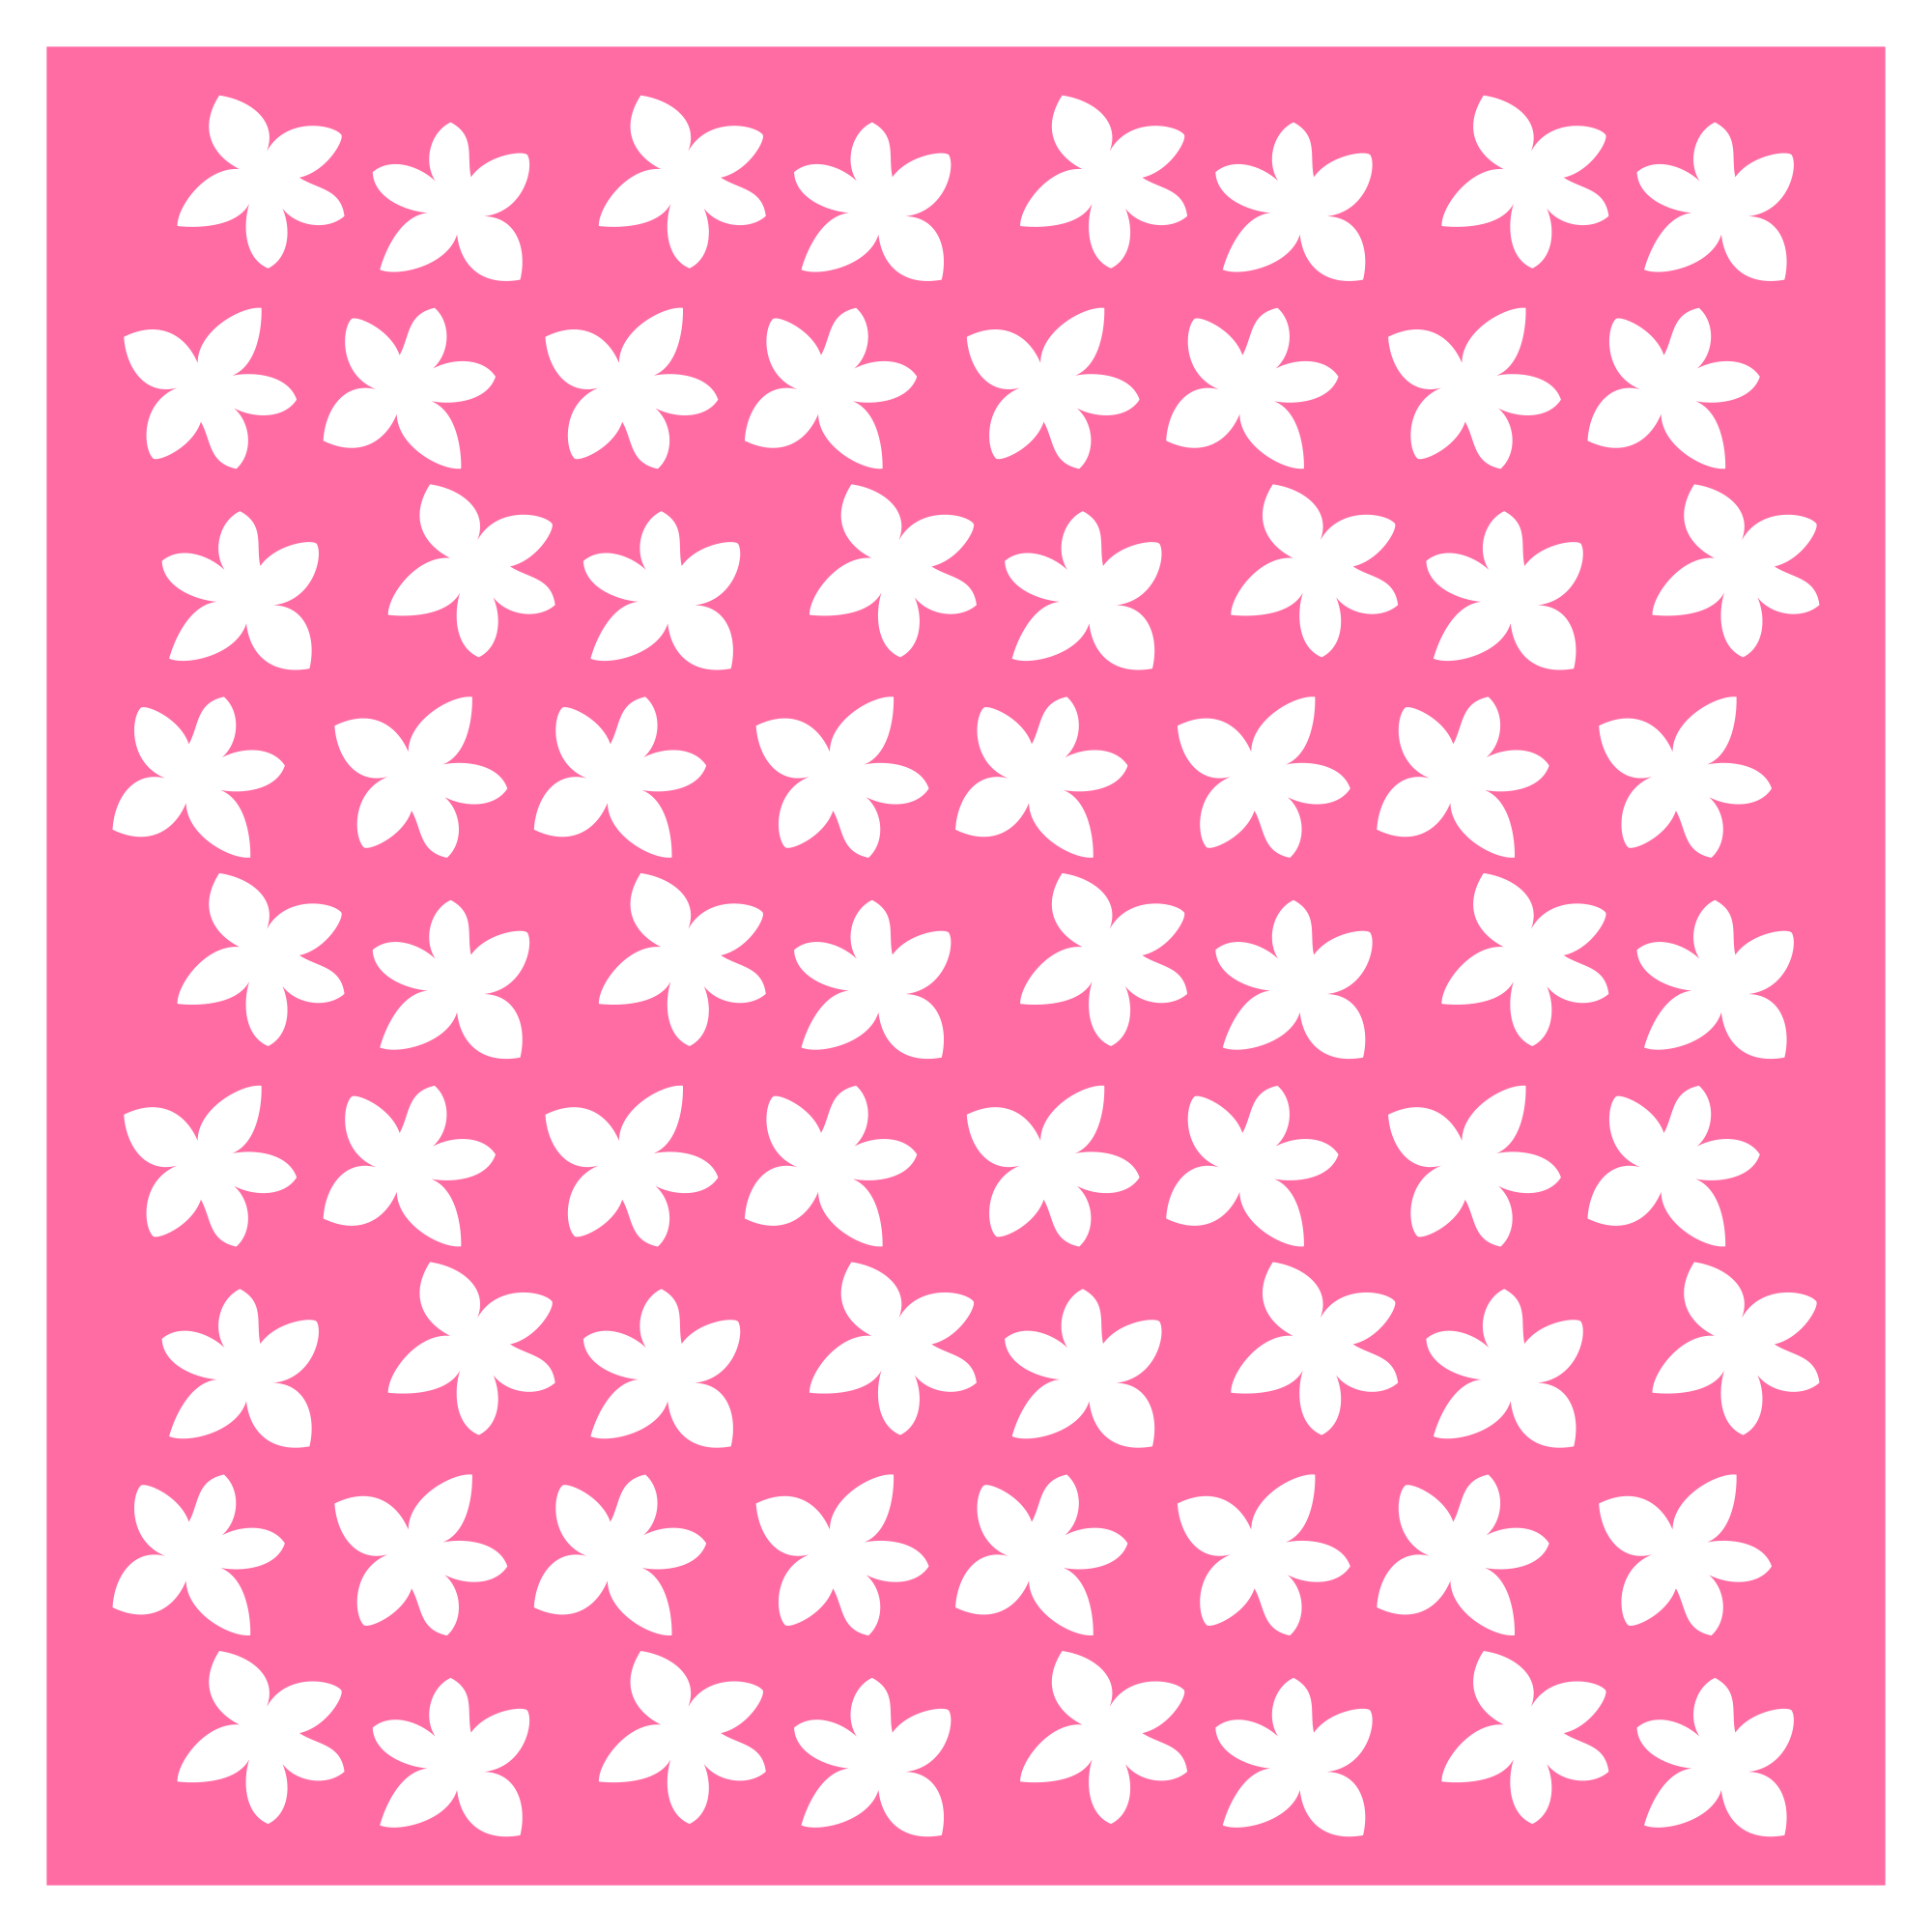 Jasmine Flower Card Base / Background / Stencil by Clikchic Designs